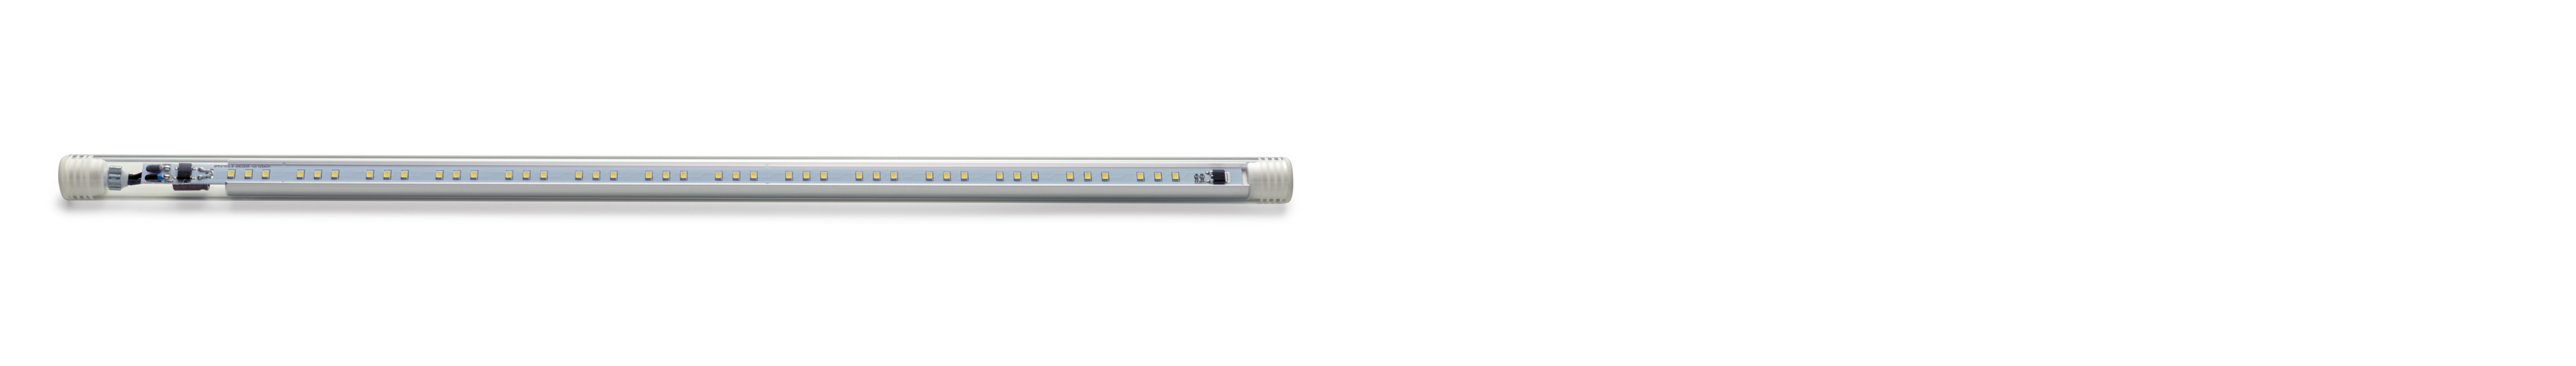 OASE GMBH HighLine Classic LED daylight 60 LED-Aquarienbeleuchtung